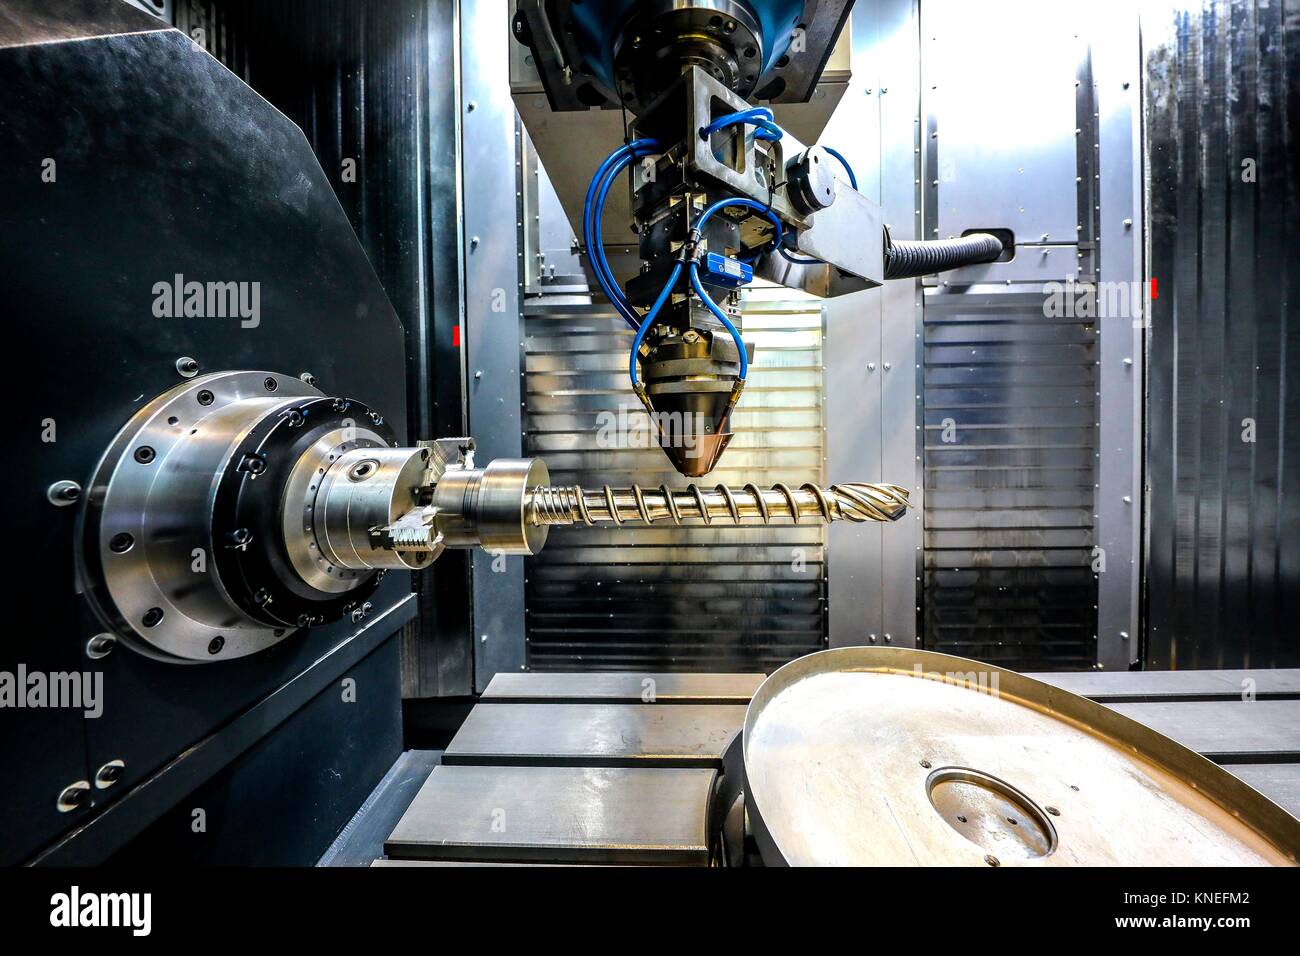 Investigador trabajando en la máquina de impresión en 3D para la industria, ya que permite crear grandes piezas de metal desde cero y acabar con ellos con gran precisión, Foto de stock